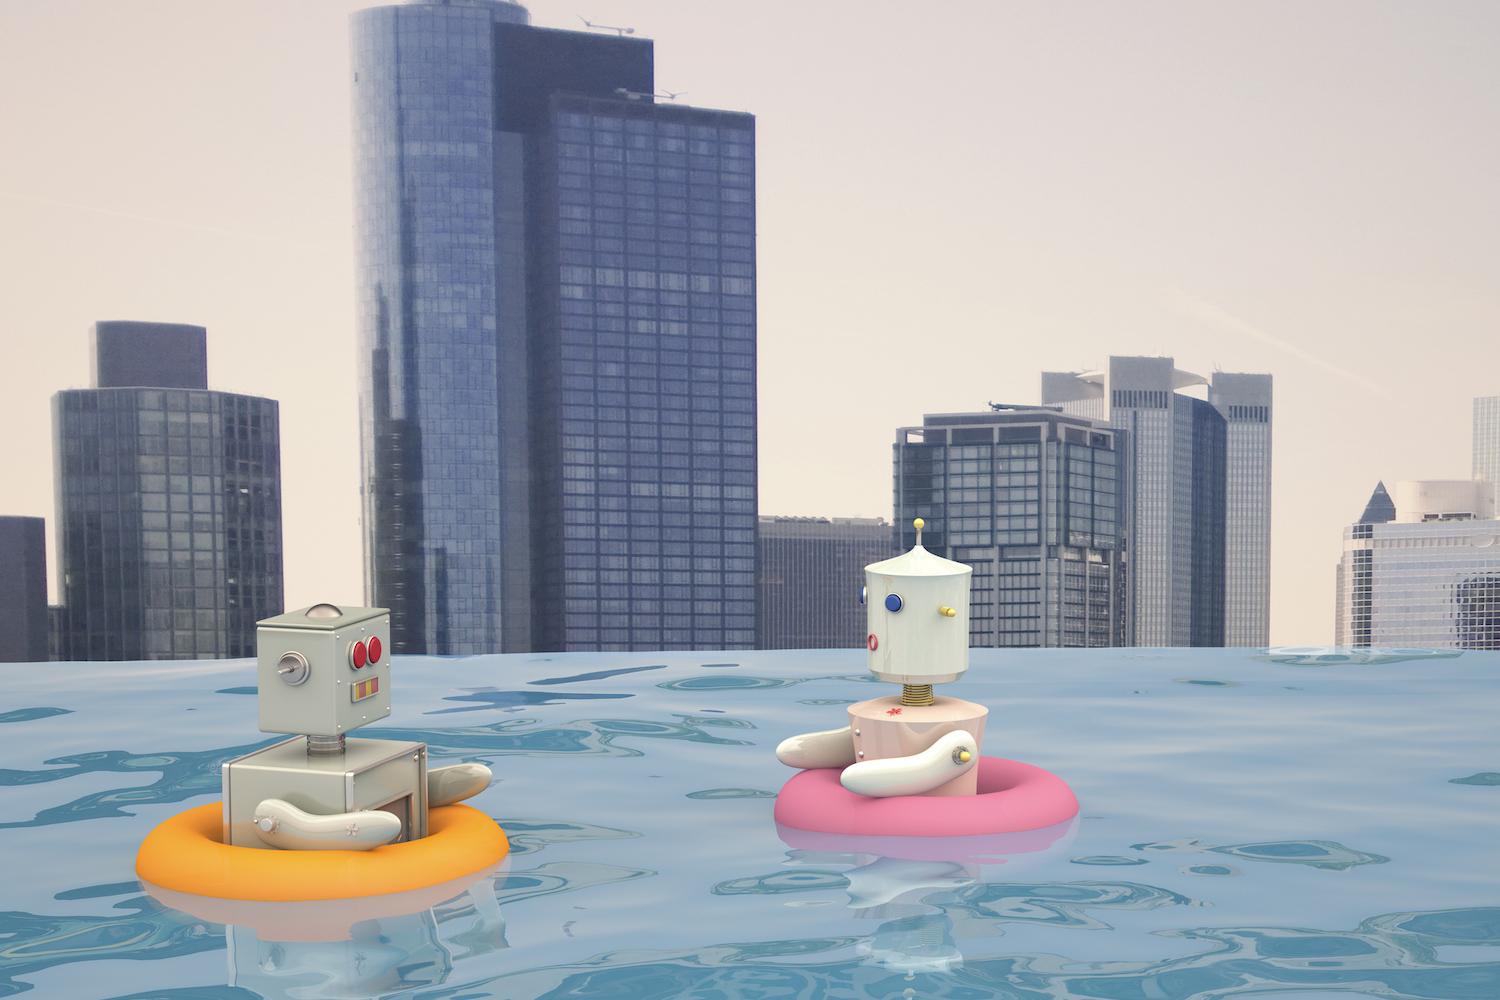 ربات زن و مرد با لاستیک های شناور در حال شنا در استخر مقابل خط افق شهر، رندر سه بعدی